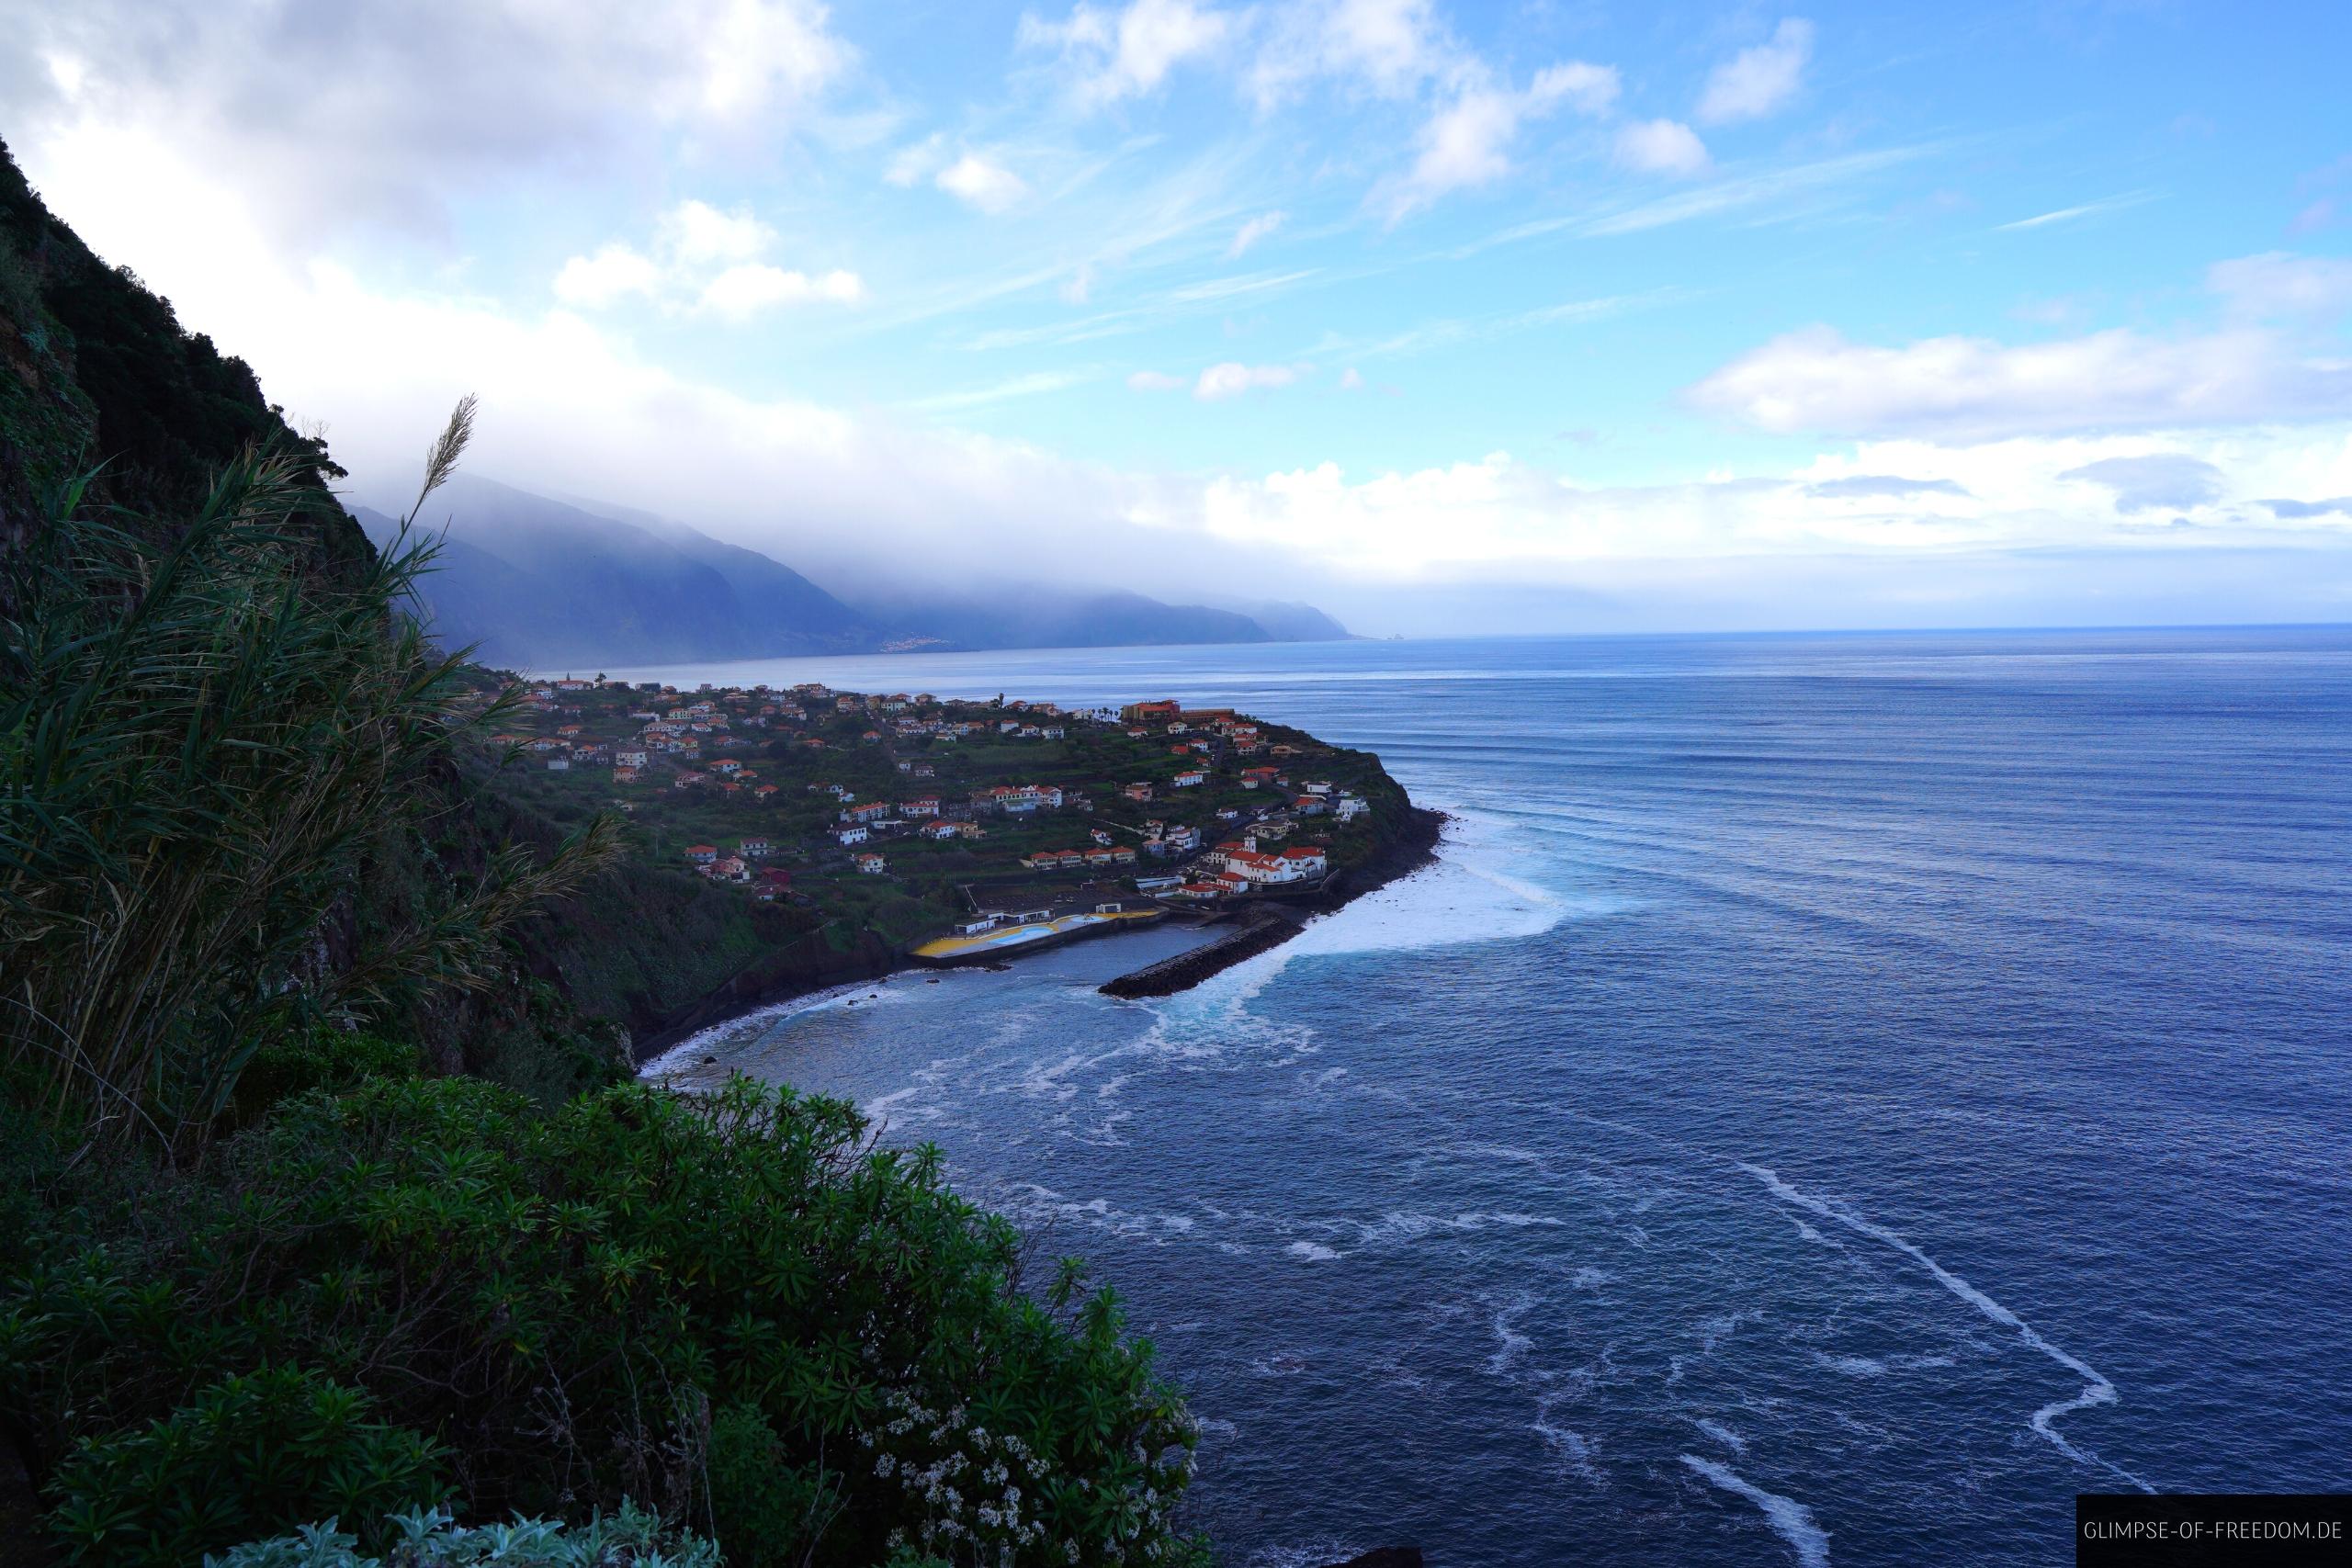 Miradouro do Bom Jesus Aussichtspunkt auf der Insel Madeira